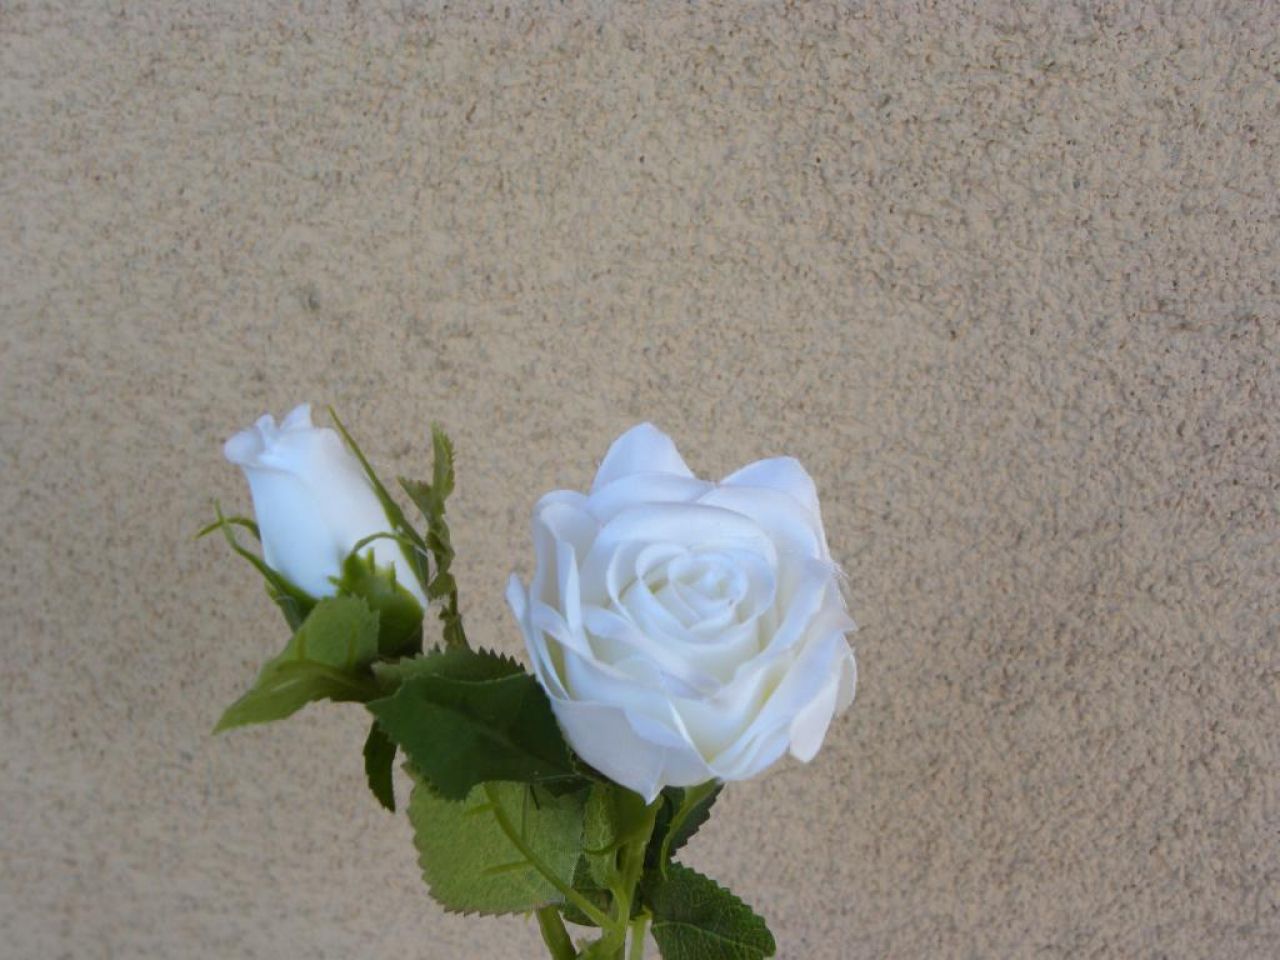 růžička bílá s poupětem